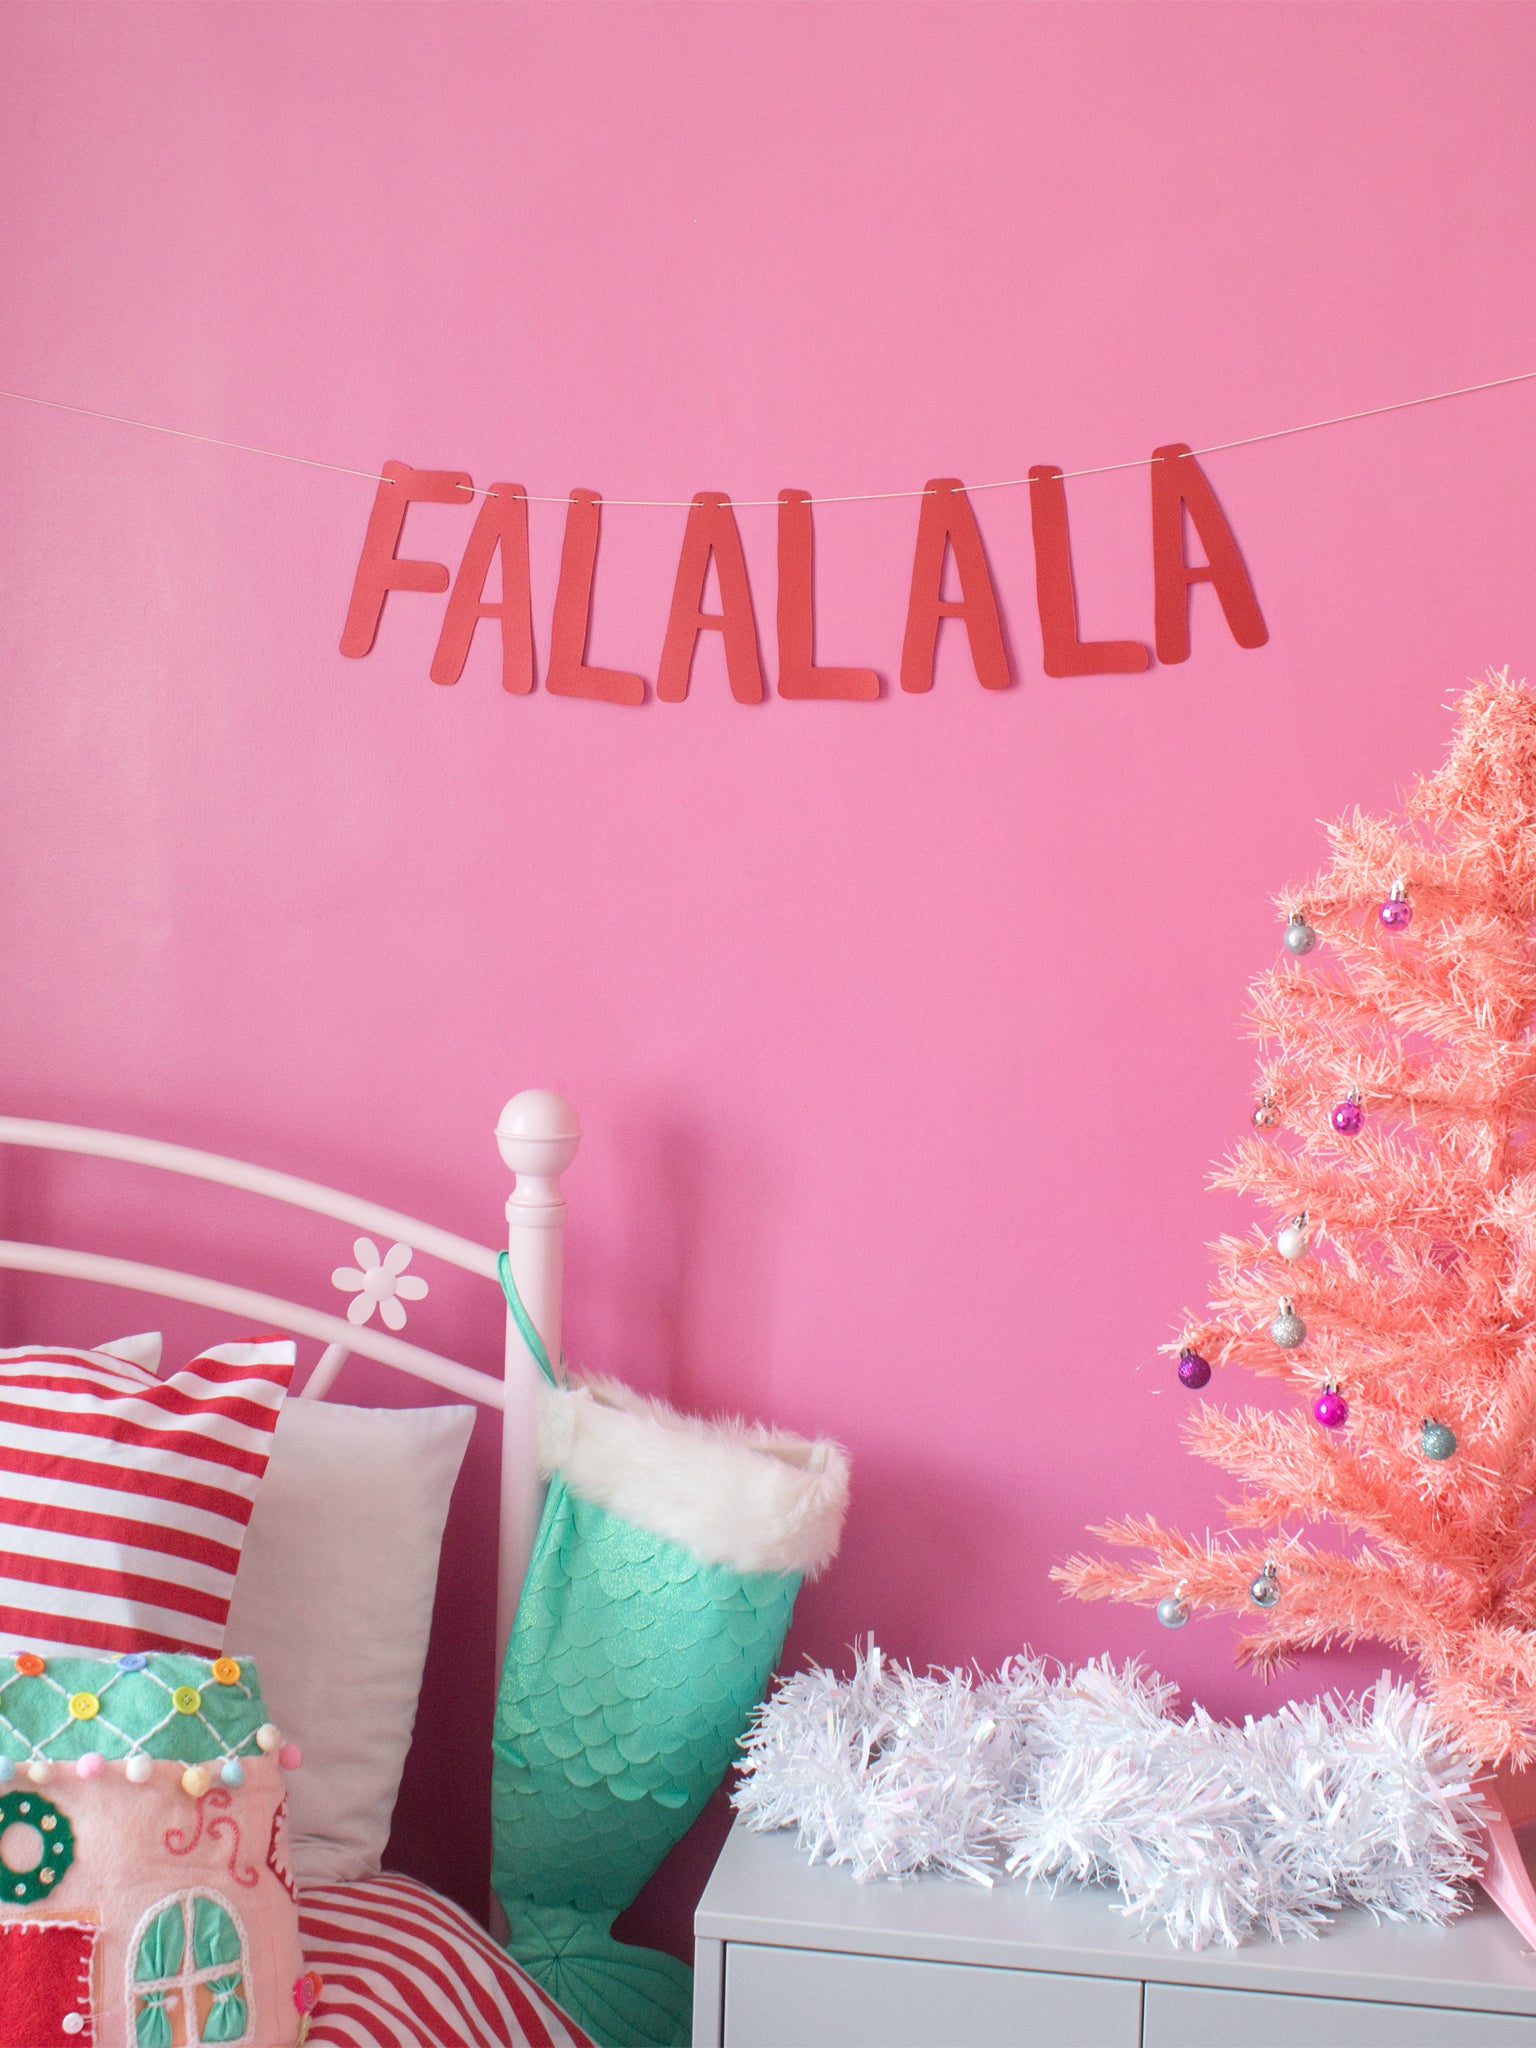 'Falalala' Christmas Paper Bunting - Red